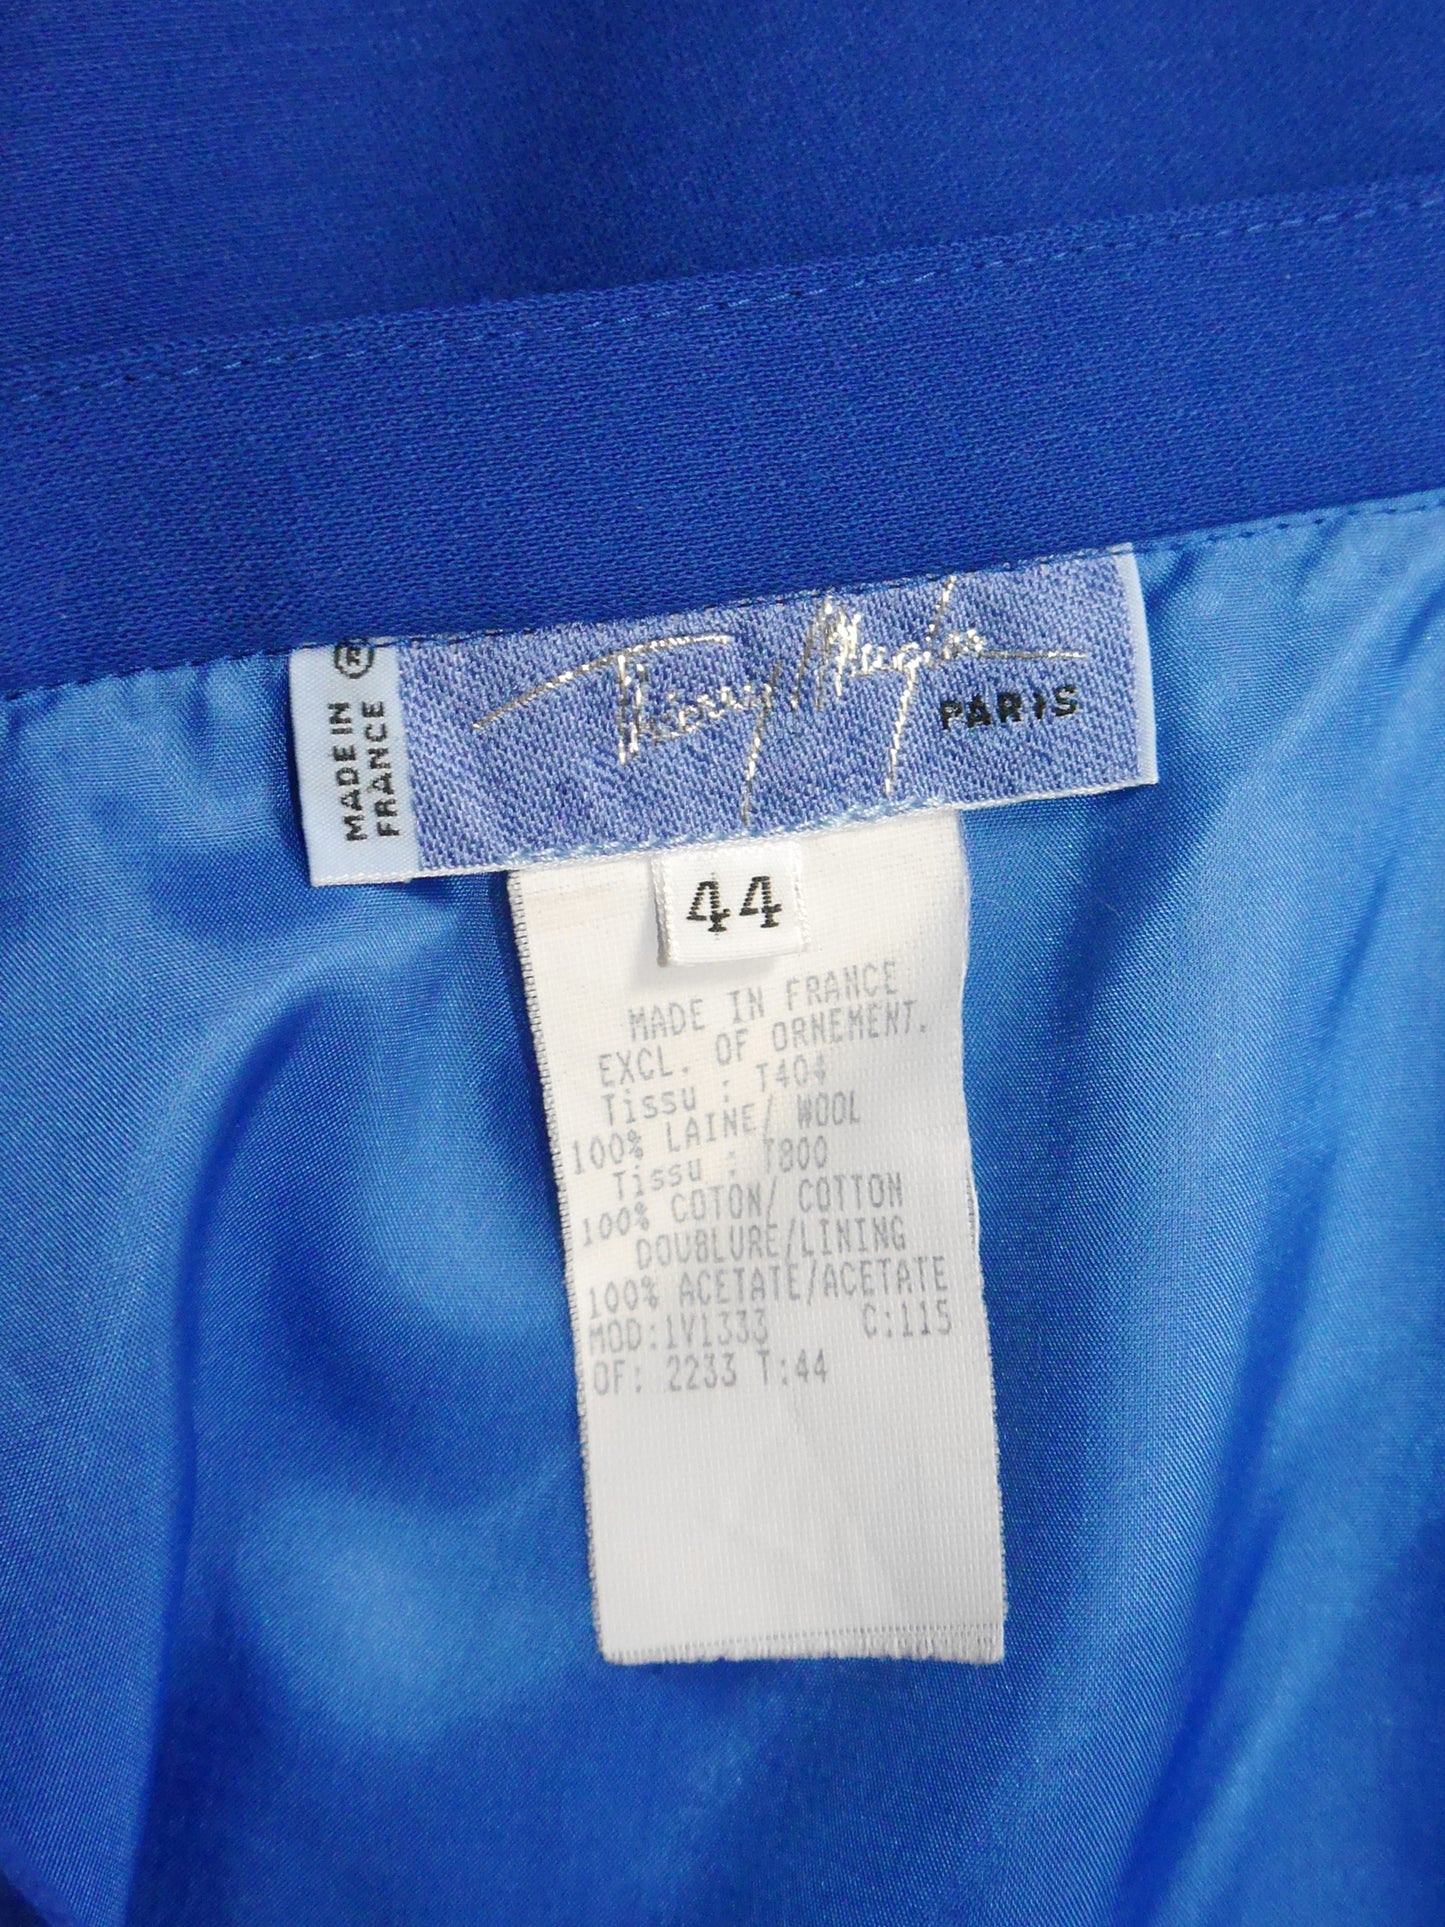 THIERRY MUGLER 1980s 1990s Vintage Electric Blue Jacket & Skirt Suit w/ Velvet Accents Size L-XL